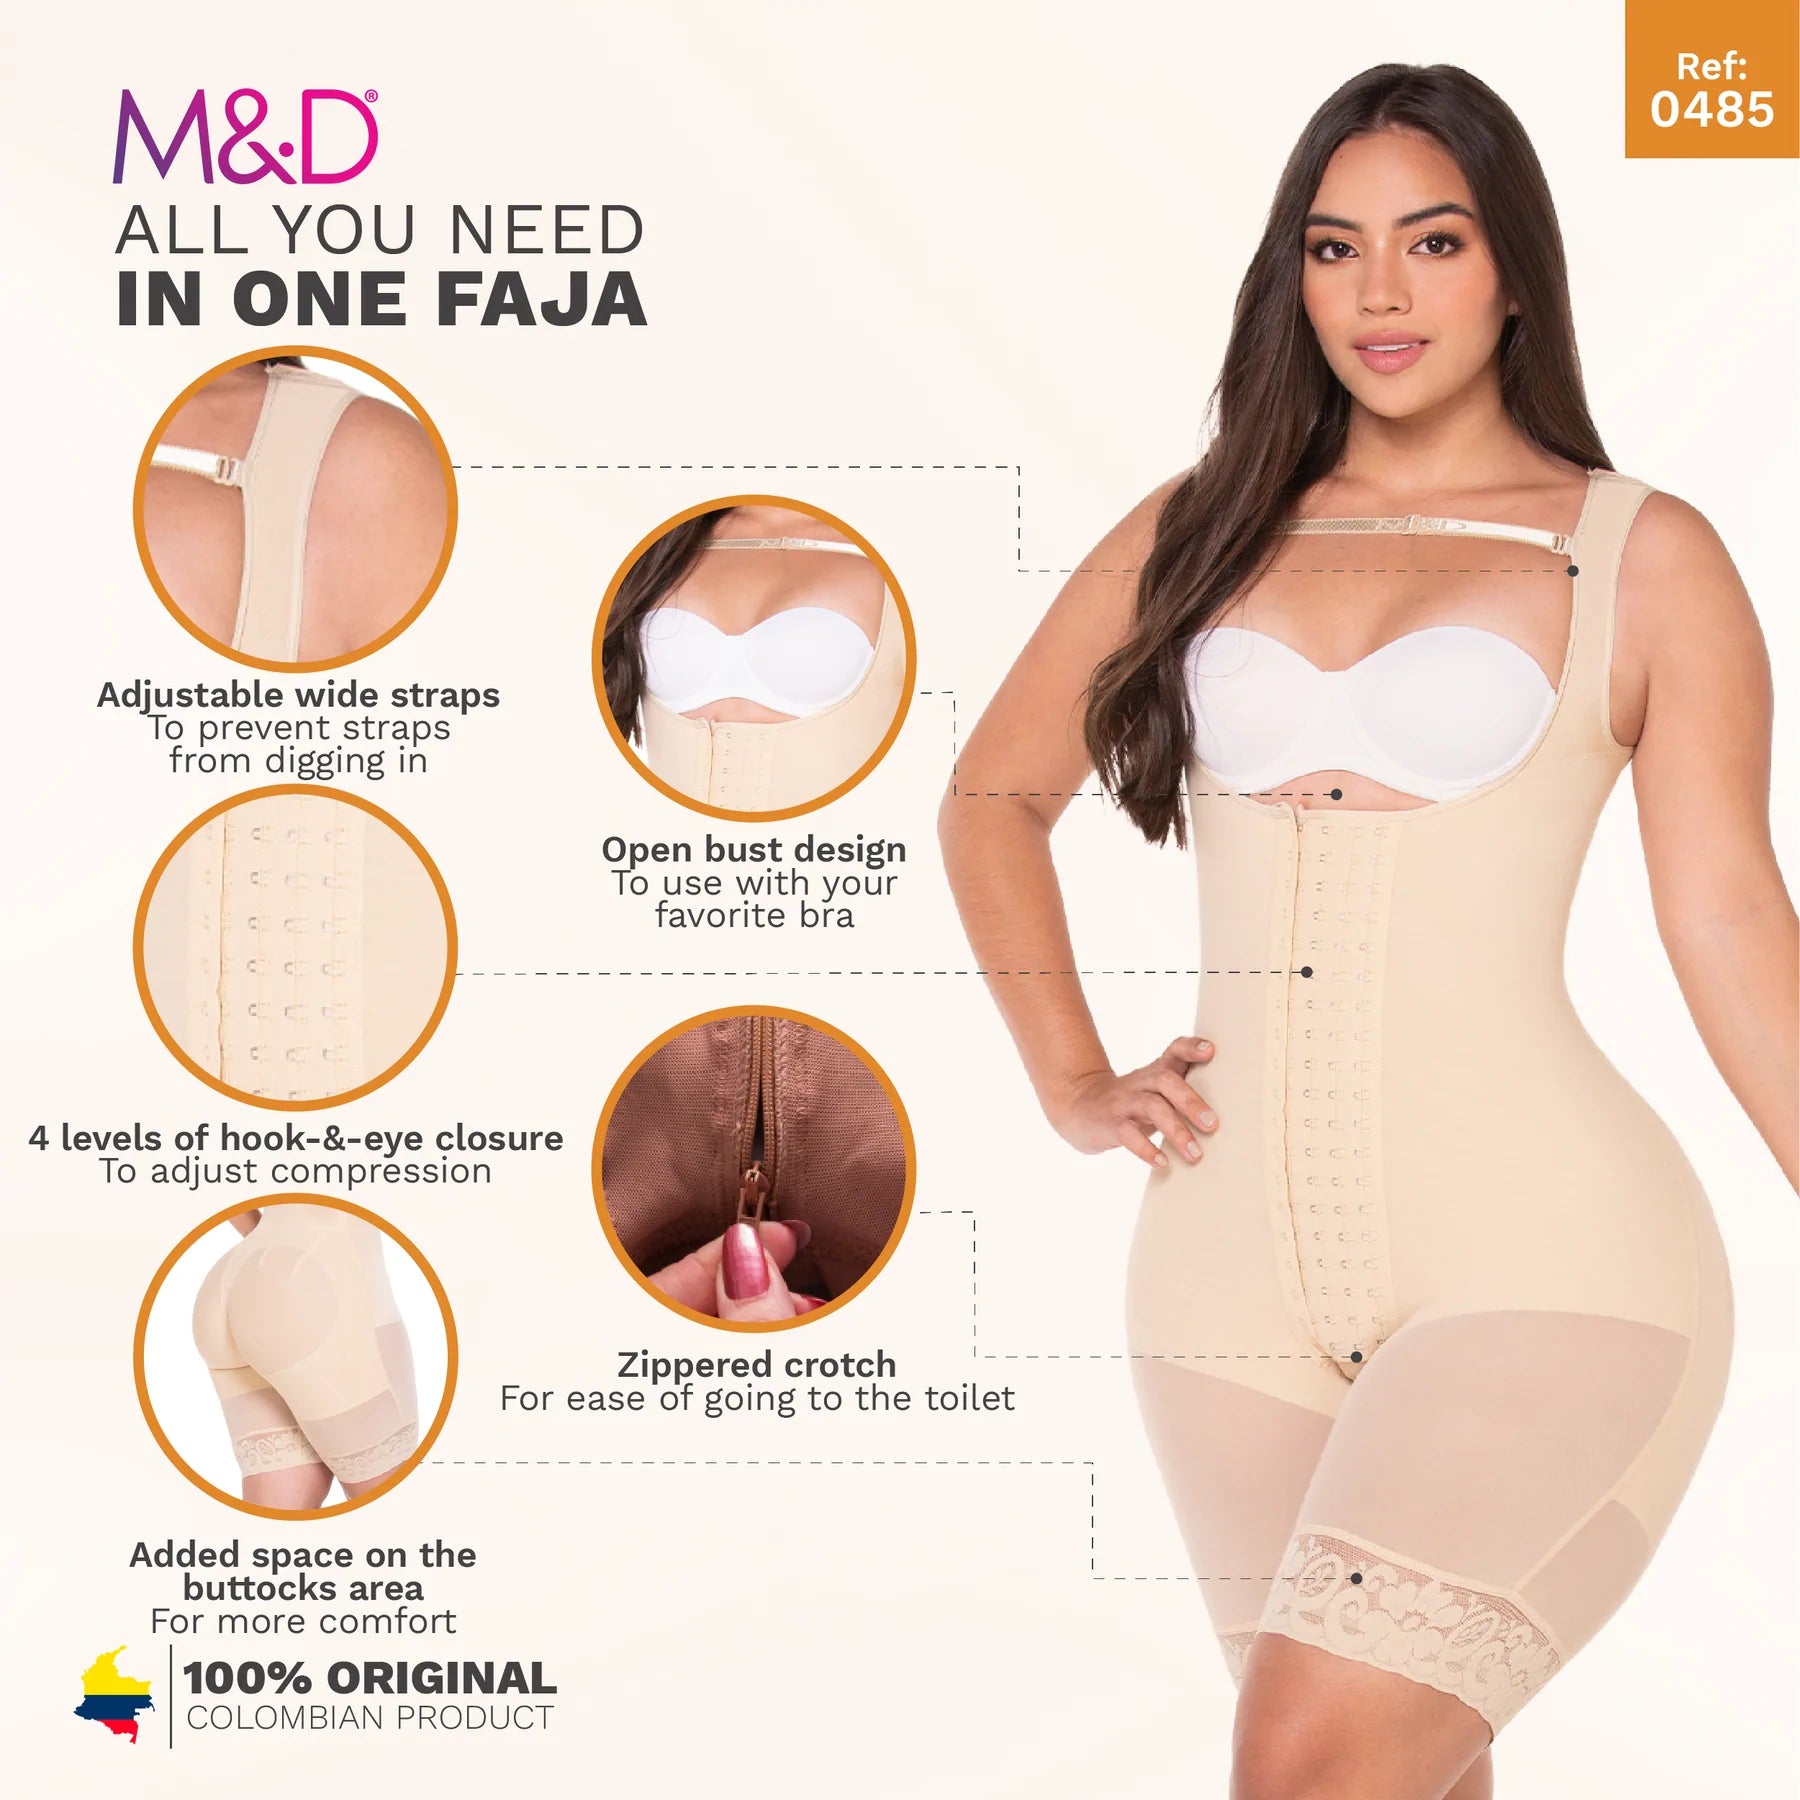 M&D Fajas Colombianas Levanta Cola y Cadera Butt Lifter Panties